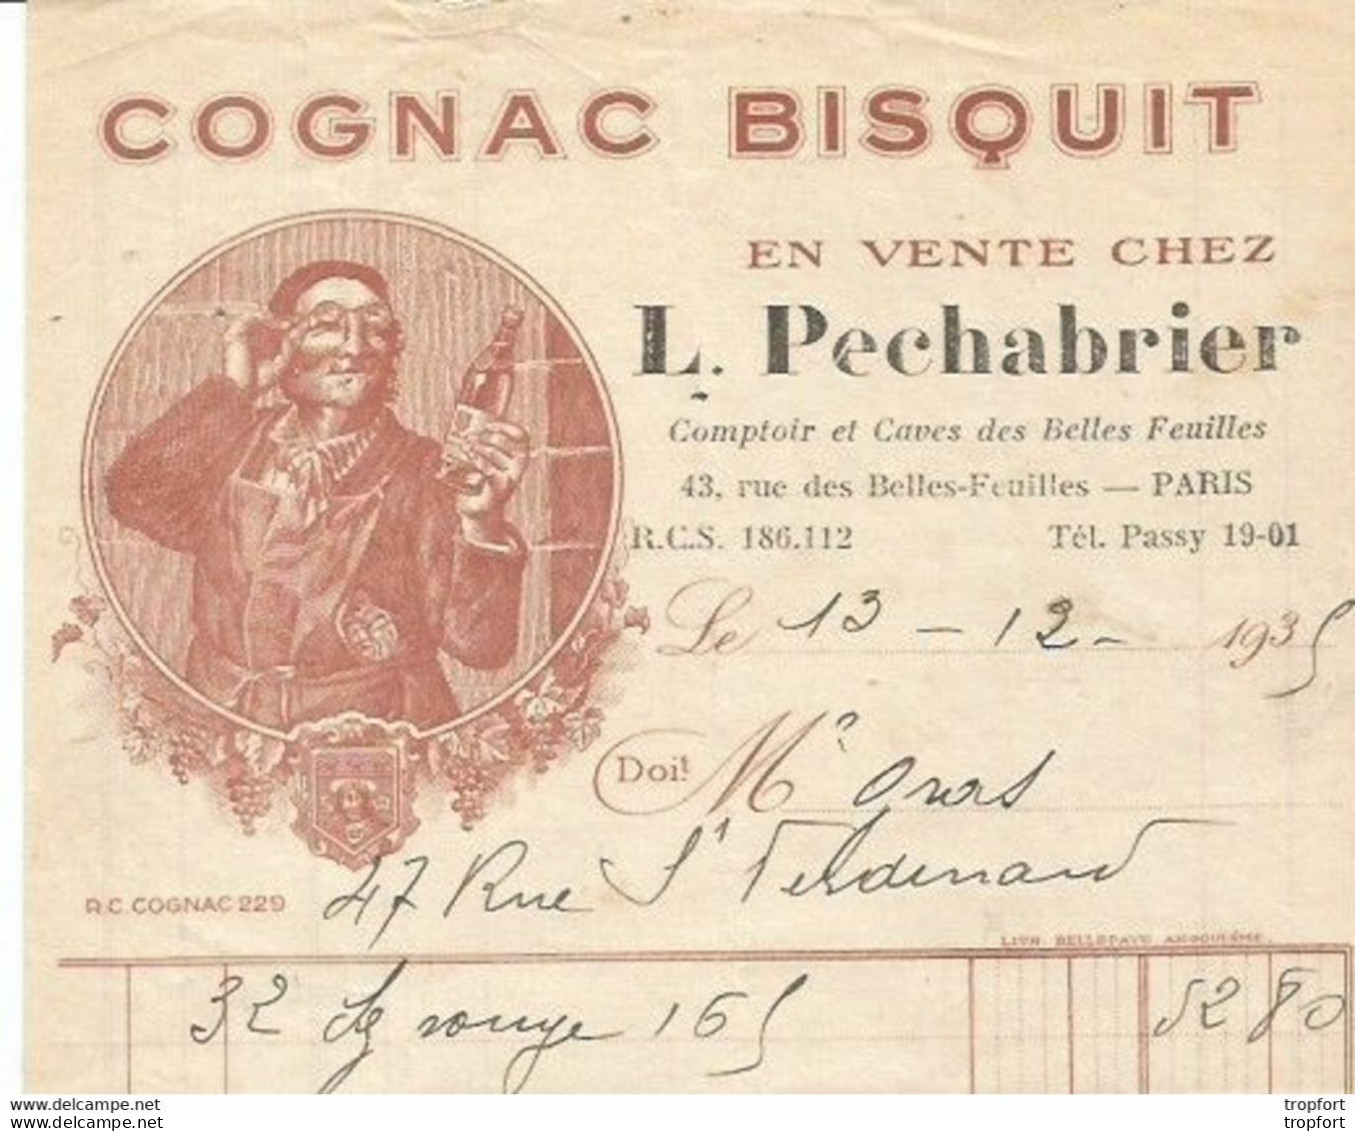 M11 Cpa / Old Invoice / Lettre Facture Ancienne 1935 COGNAC BISQUIT L Pechabrier PARIS - Artesanos